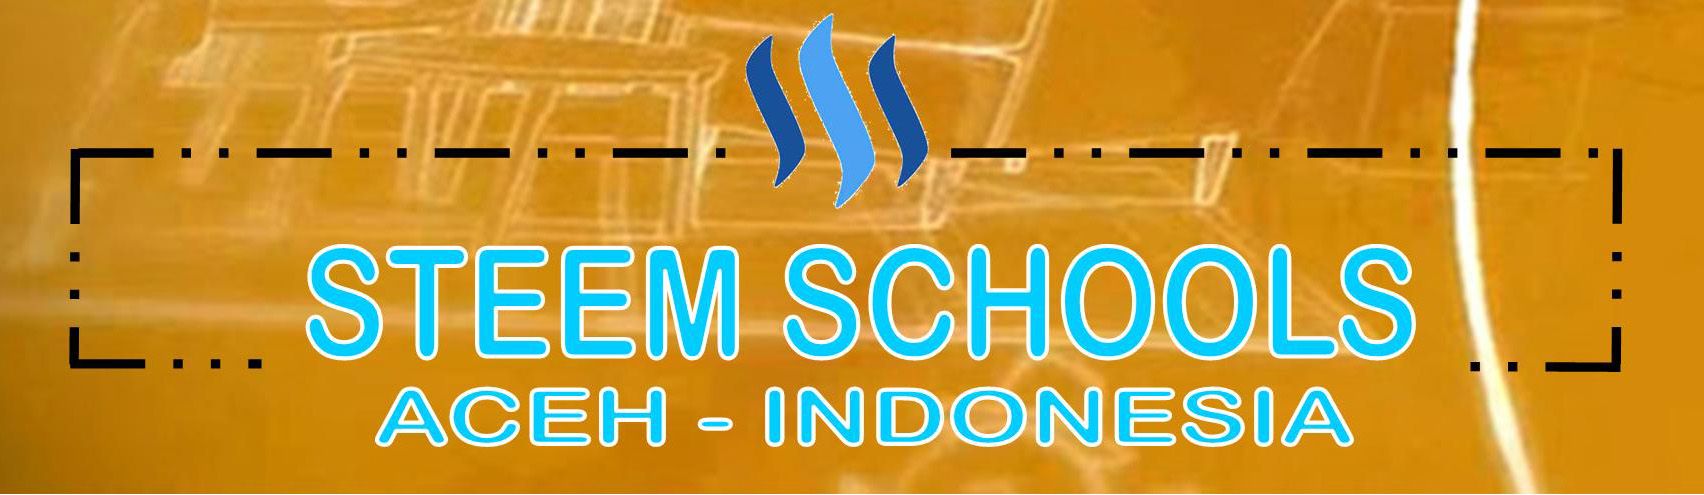 Logo SteemSchools.jpg